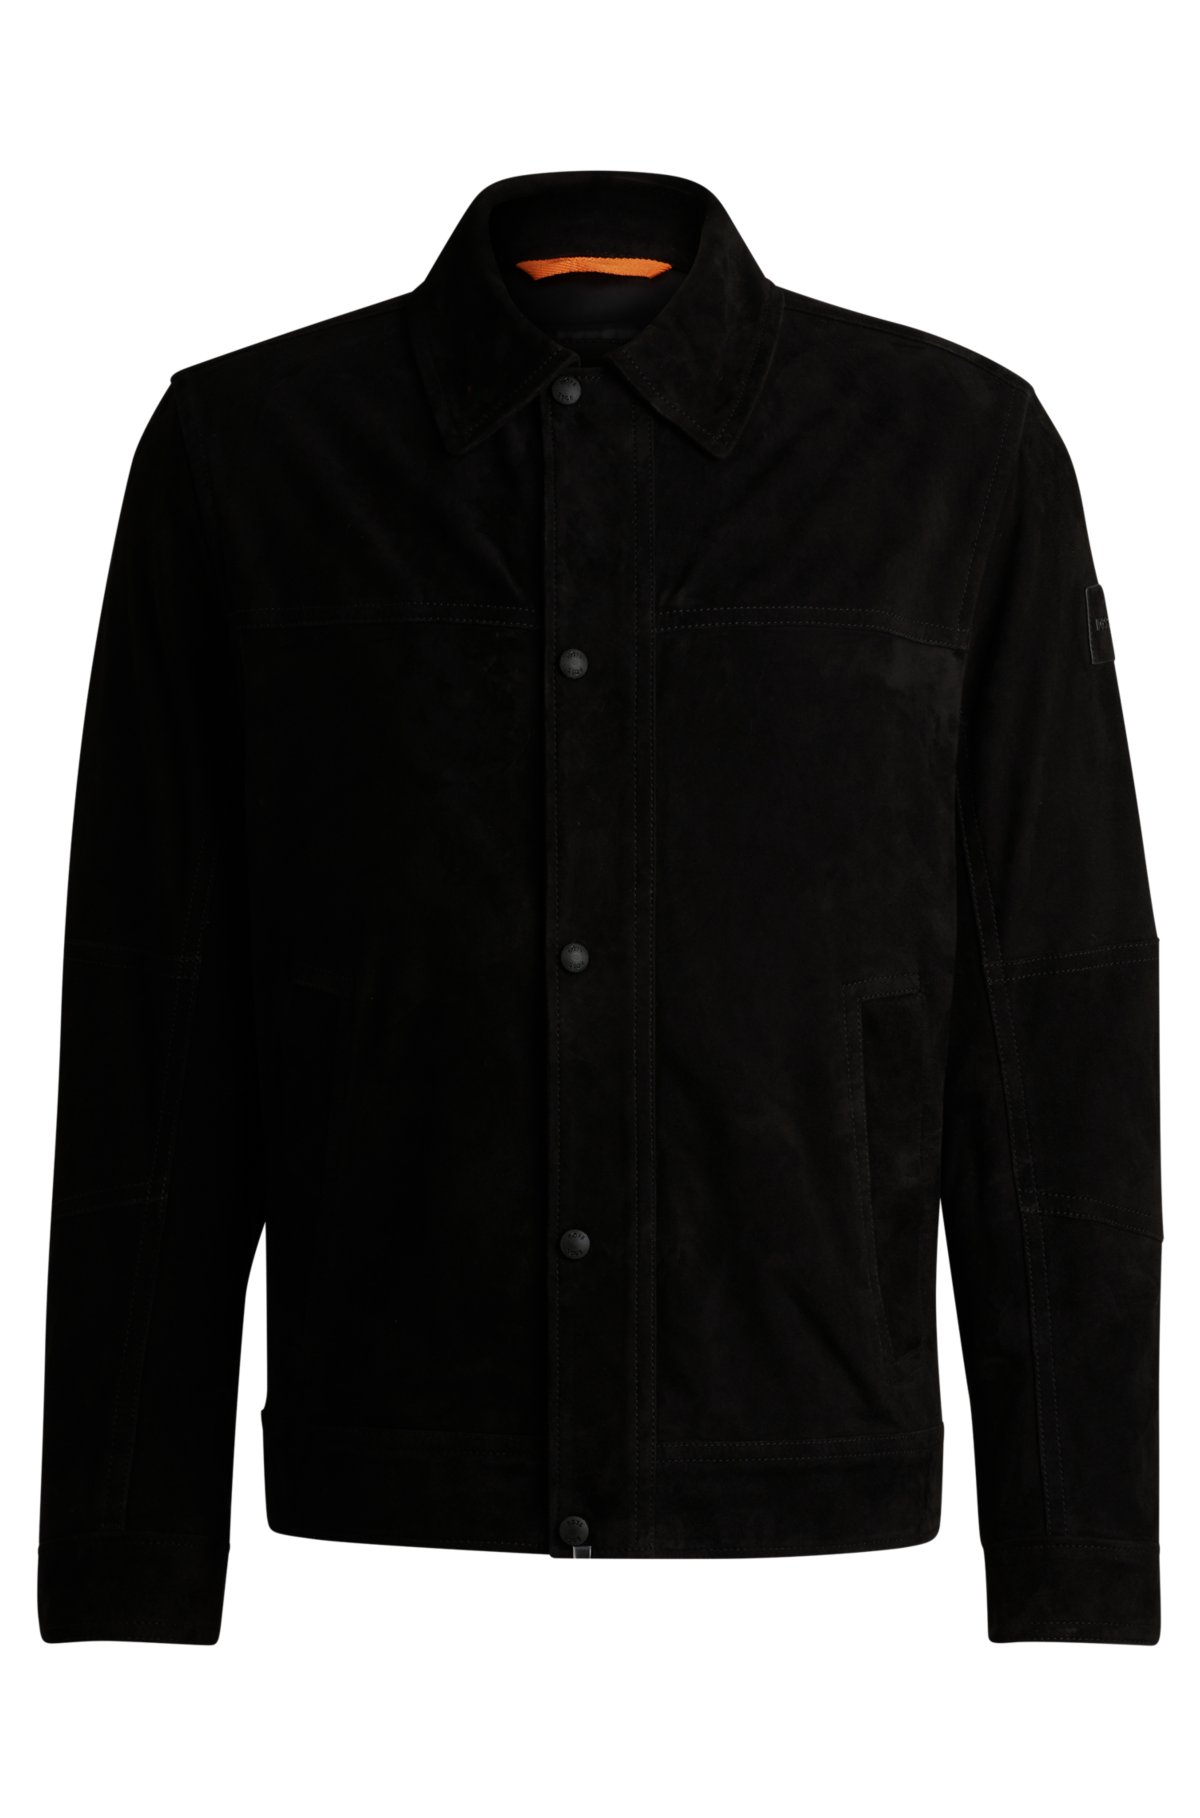 Regular-fit jacket in nappalan-back suede, Black